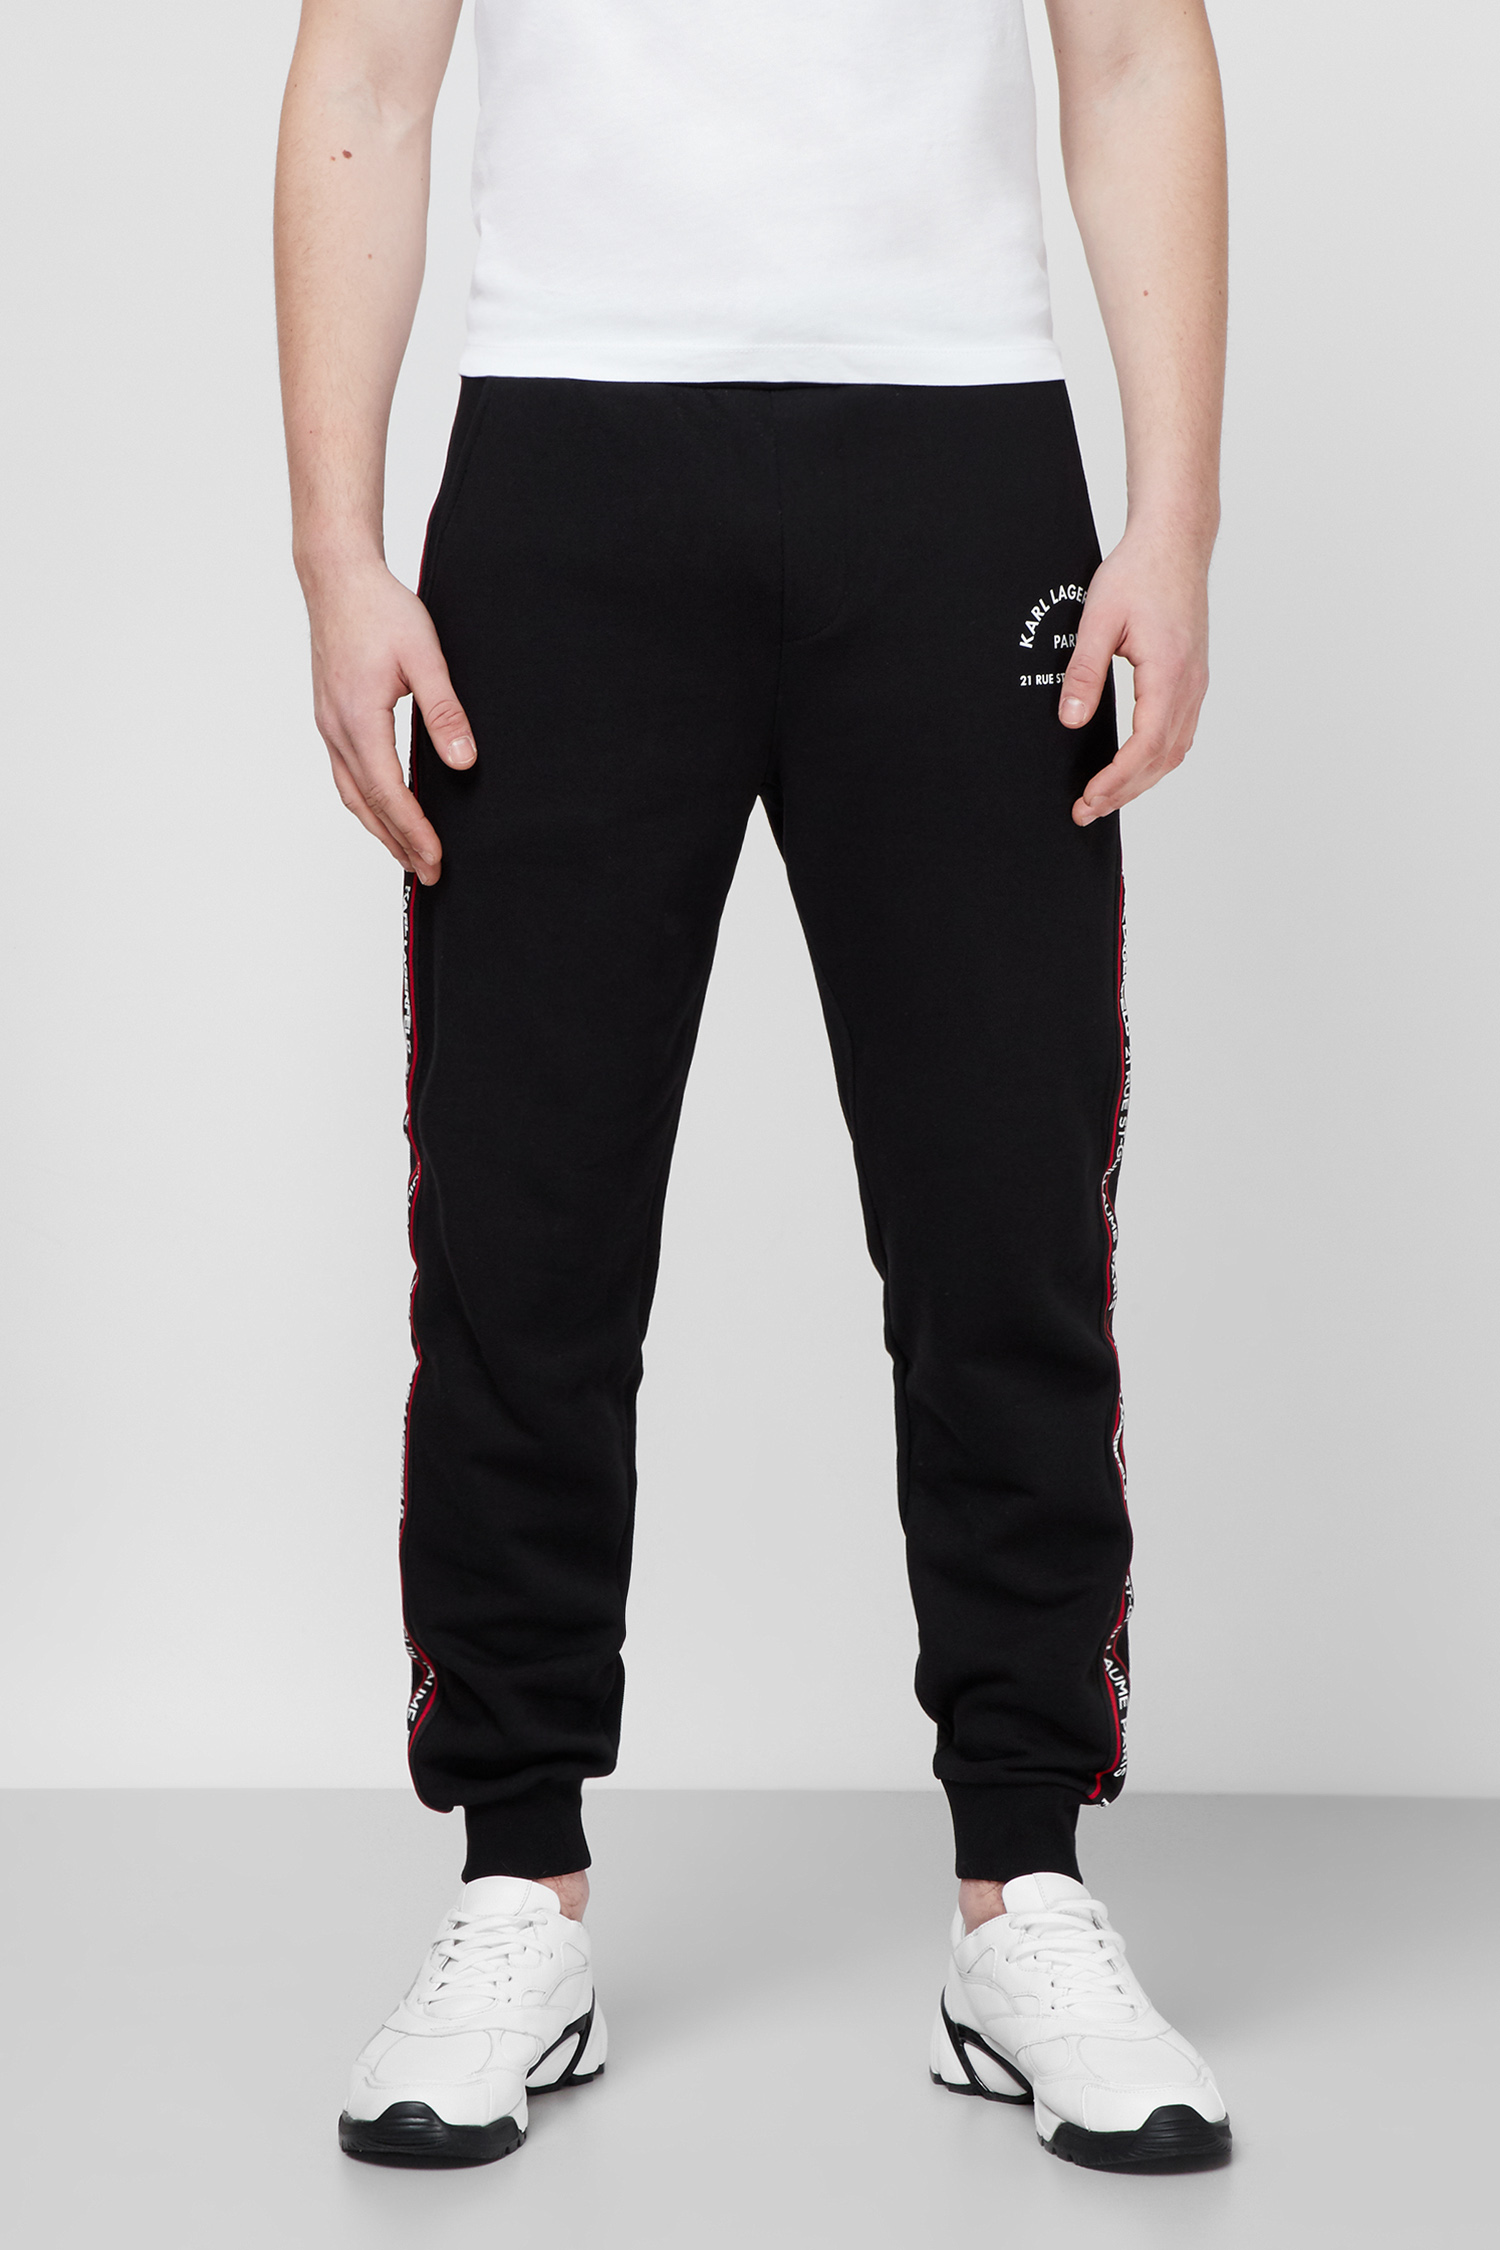 Чорні спортивні штани для хлопців Karl Lagerfeld 511900.705072;990